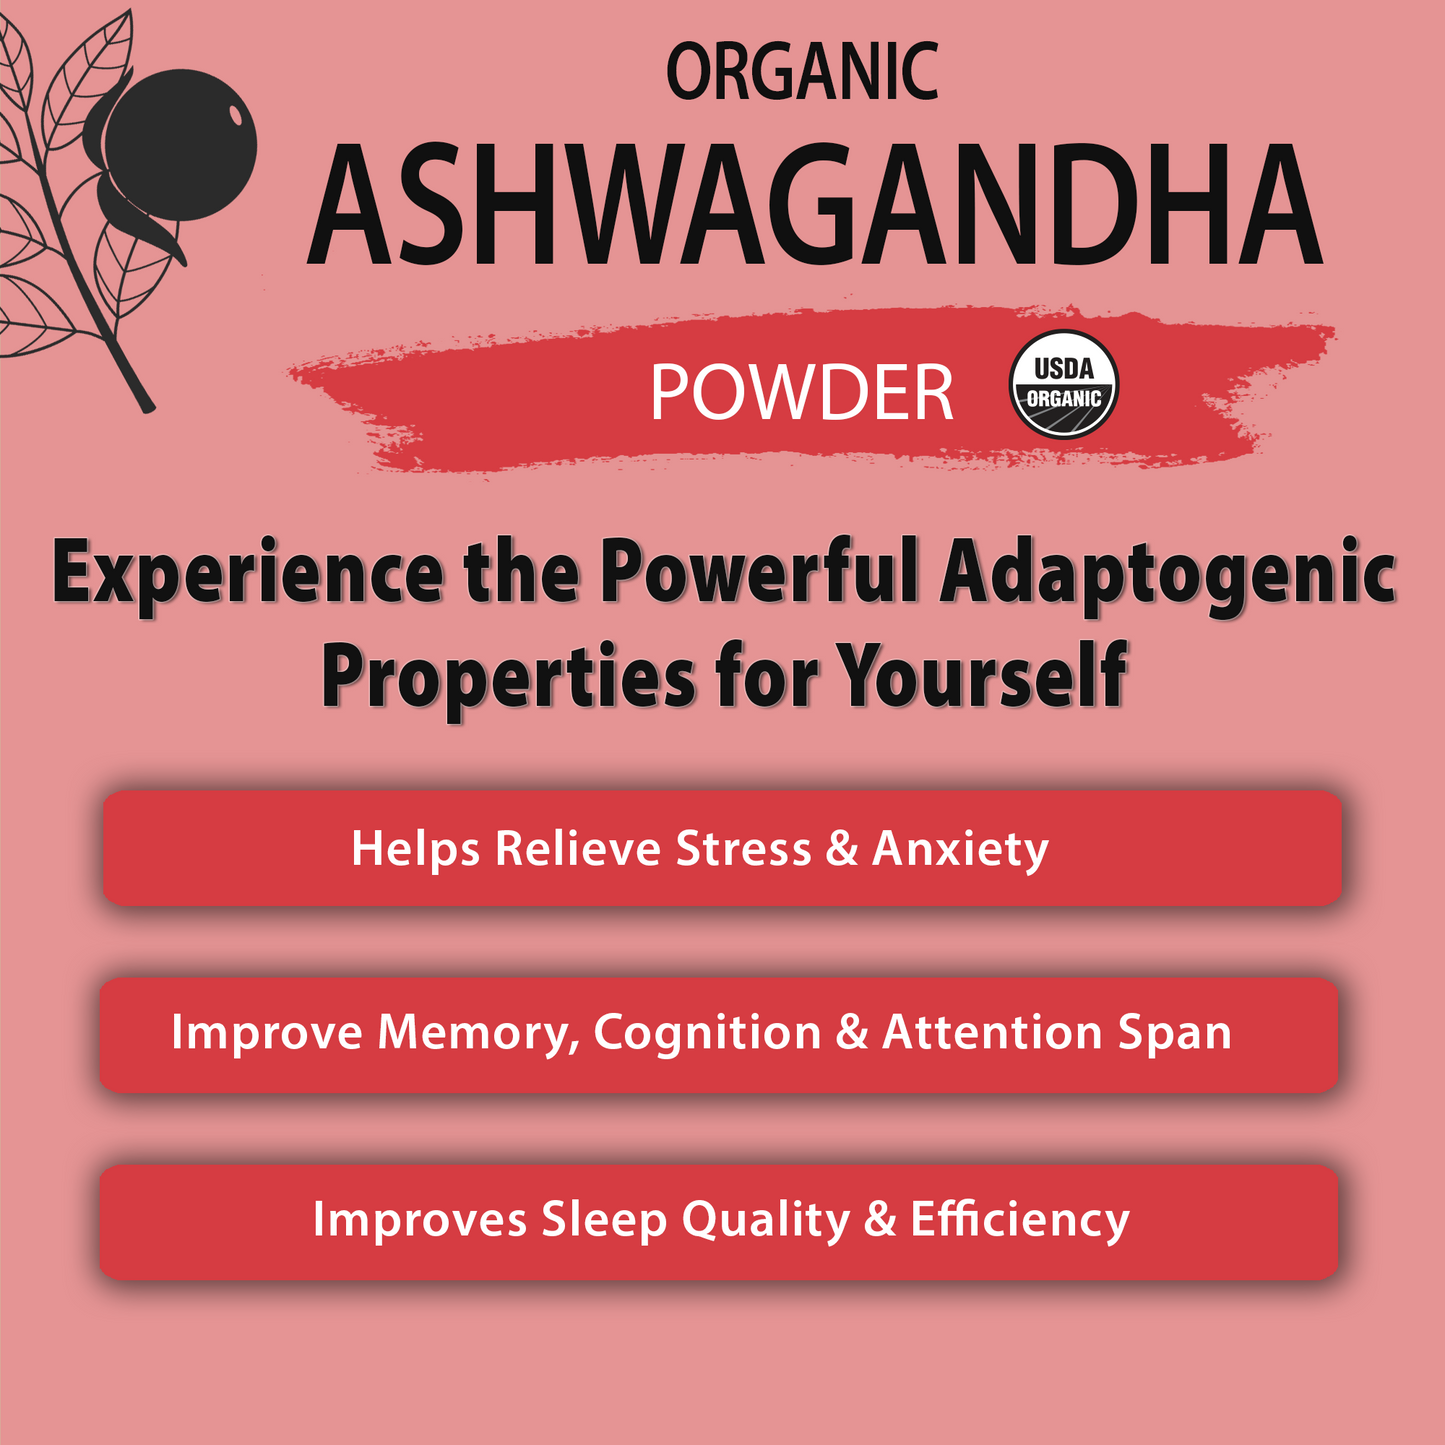 Organic Ashwagandha Powder (10.58 oz)